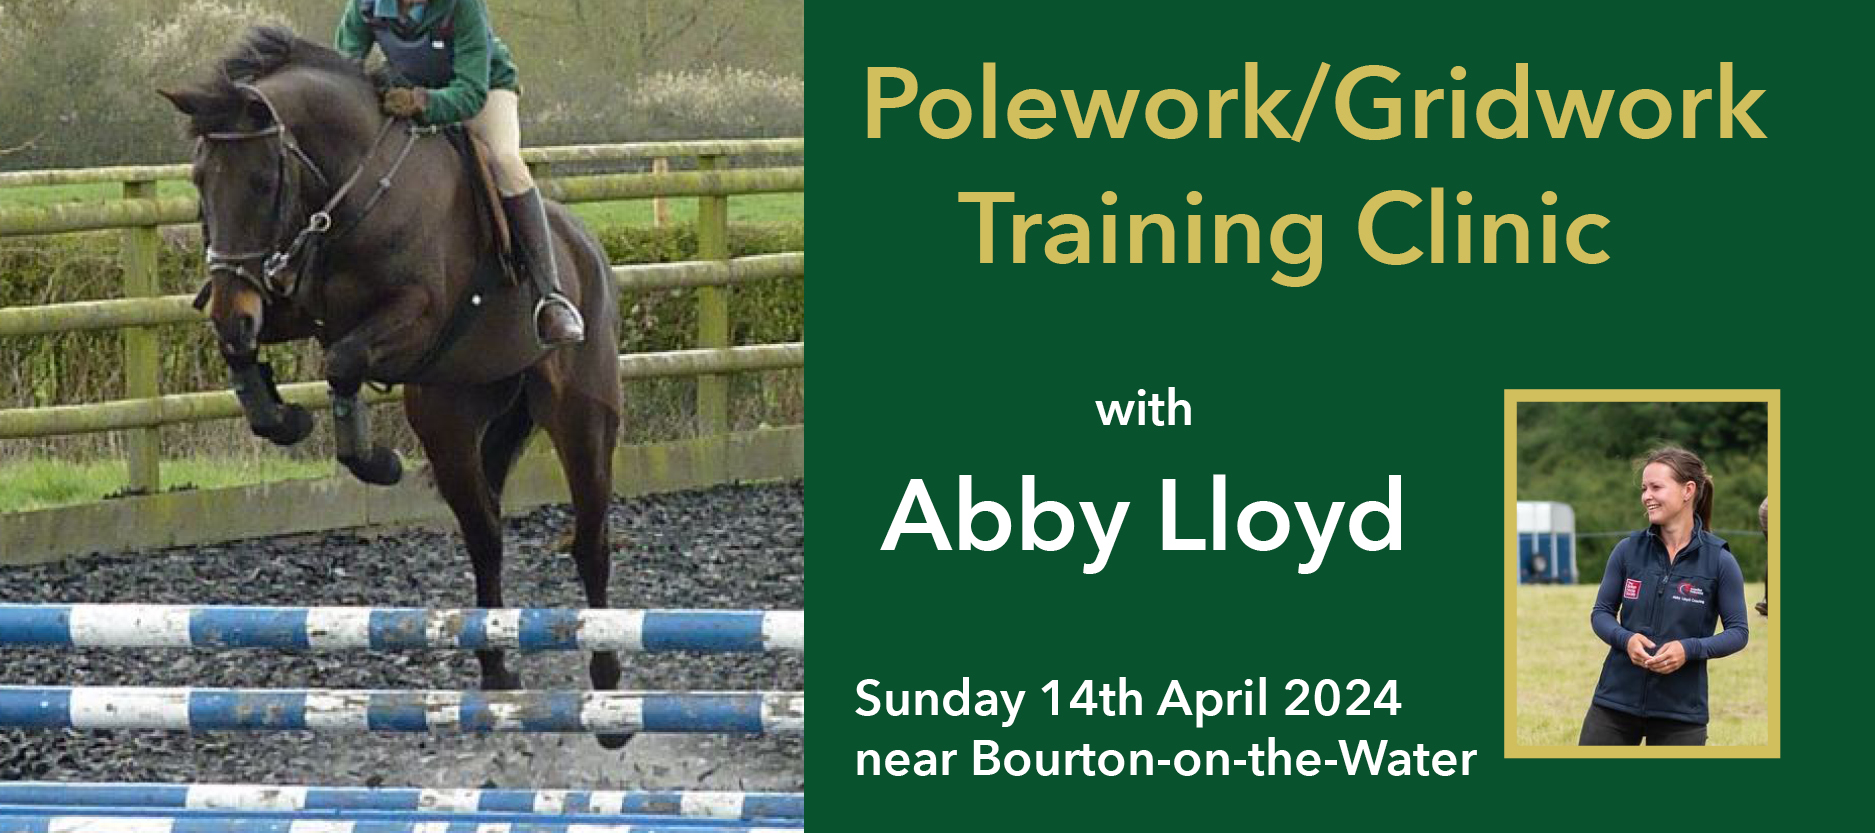 Polework/Gridwork Training with Abby Lloyd